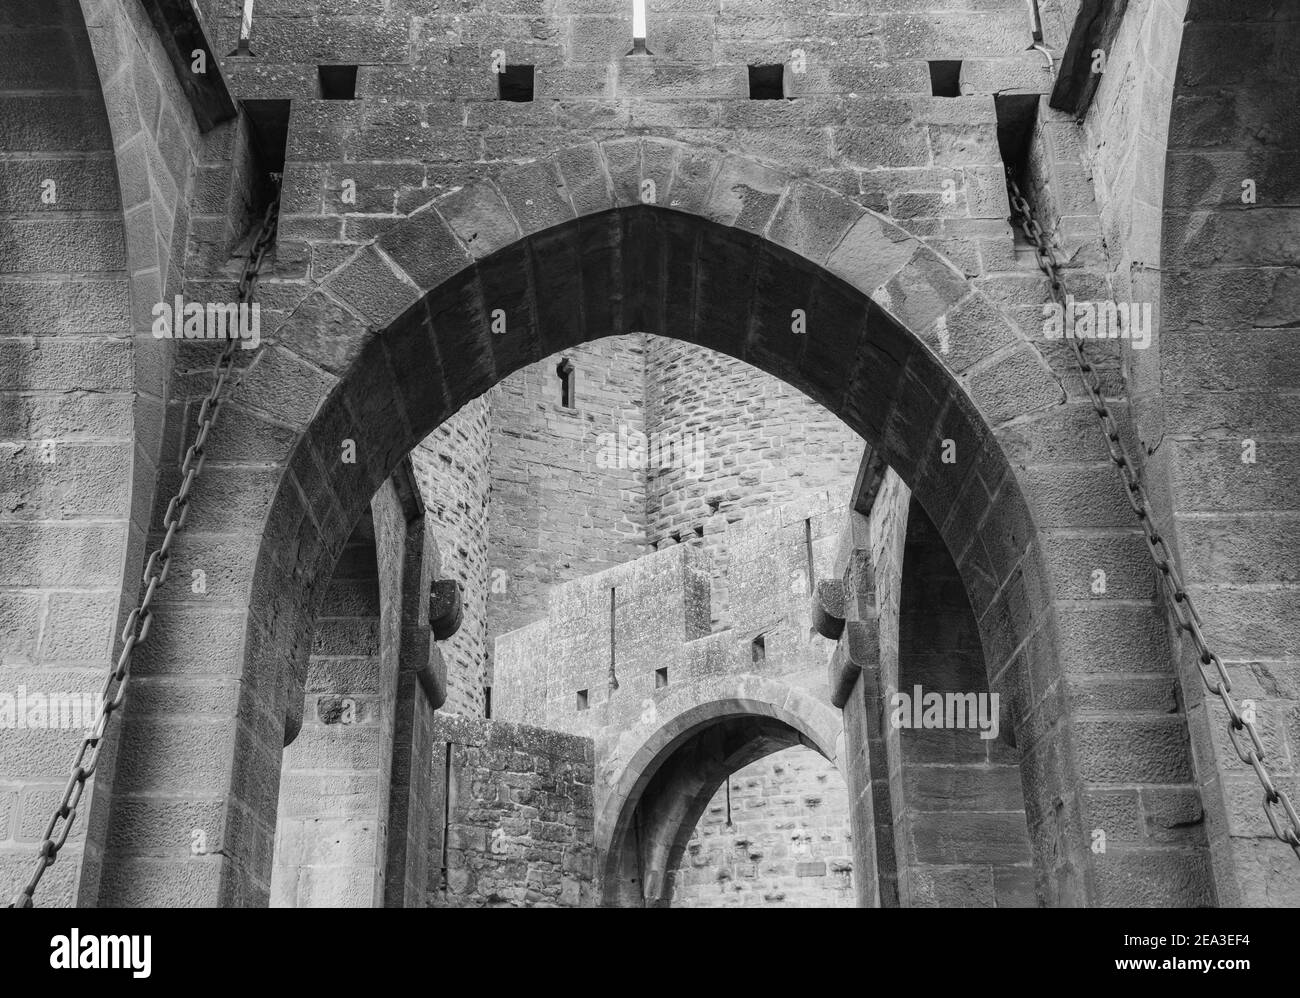 Cité médiévale historique fortifiée de Carcassonne dans le sud de la France, fief des Cathares occitanes Banque D'Images